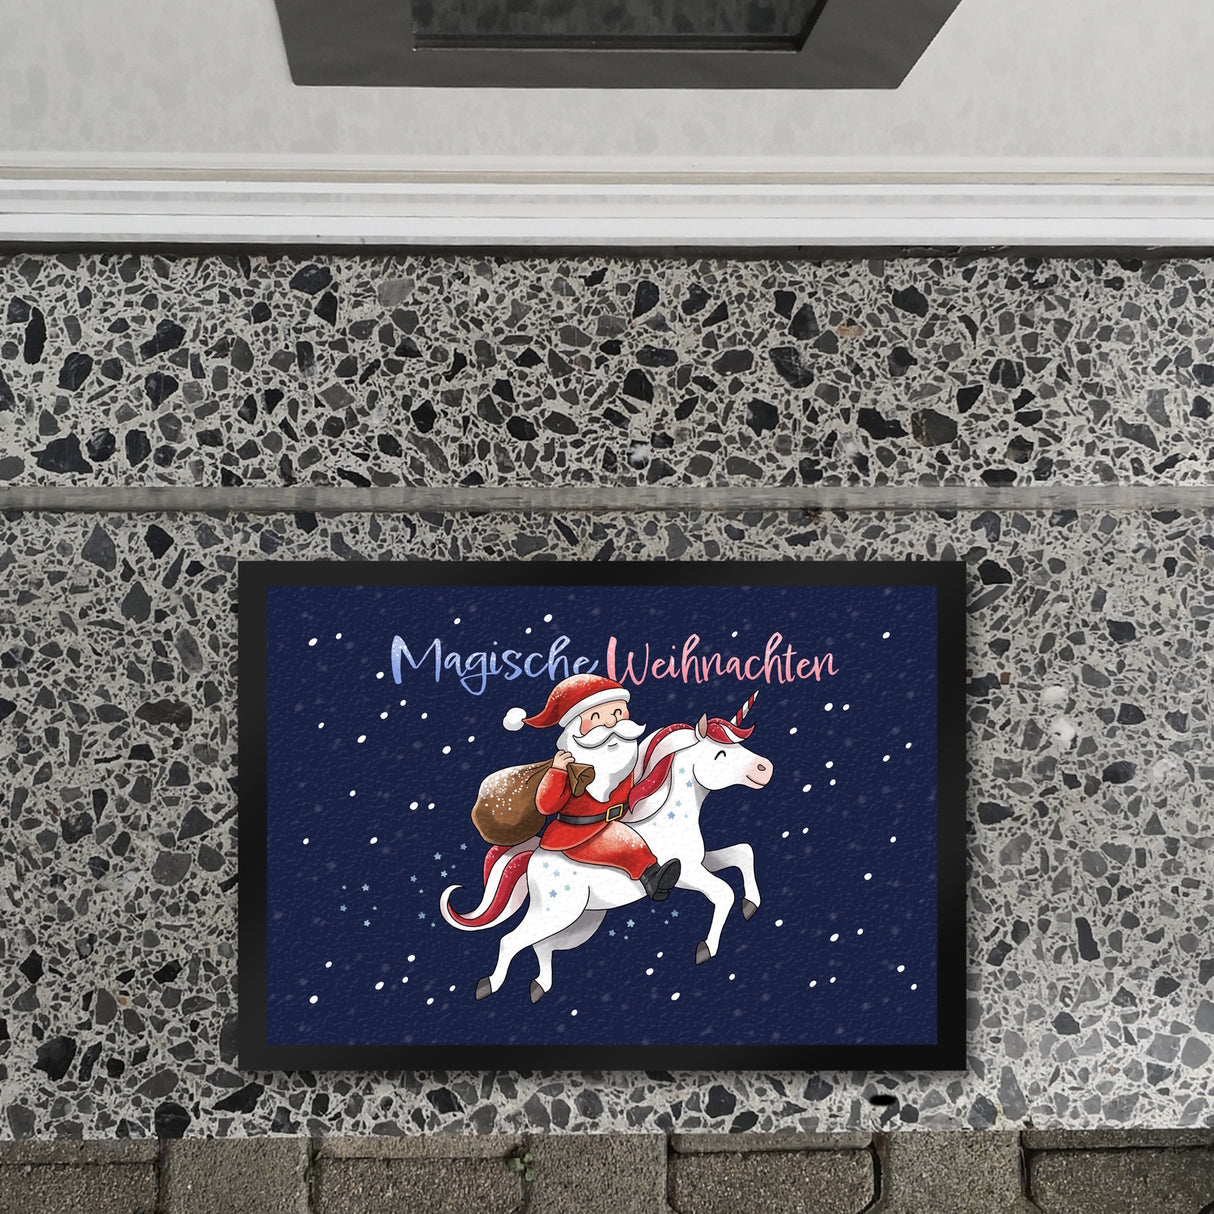 Weihnachtsmann auf Einhorn Fußmatte in 35x50 cm mit Spruch Magische Weihnachten